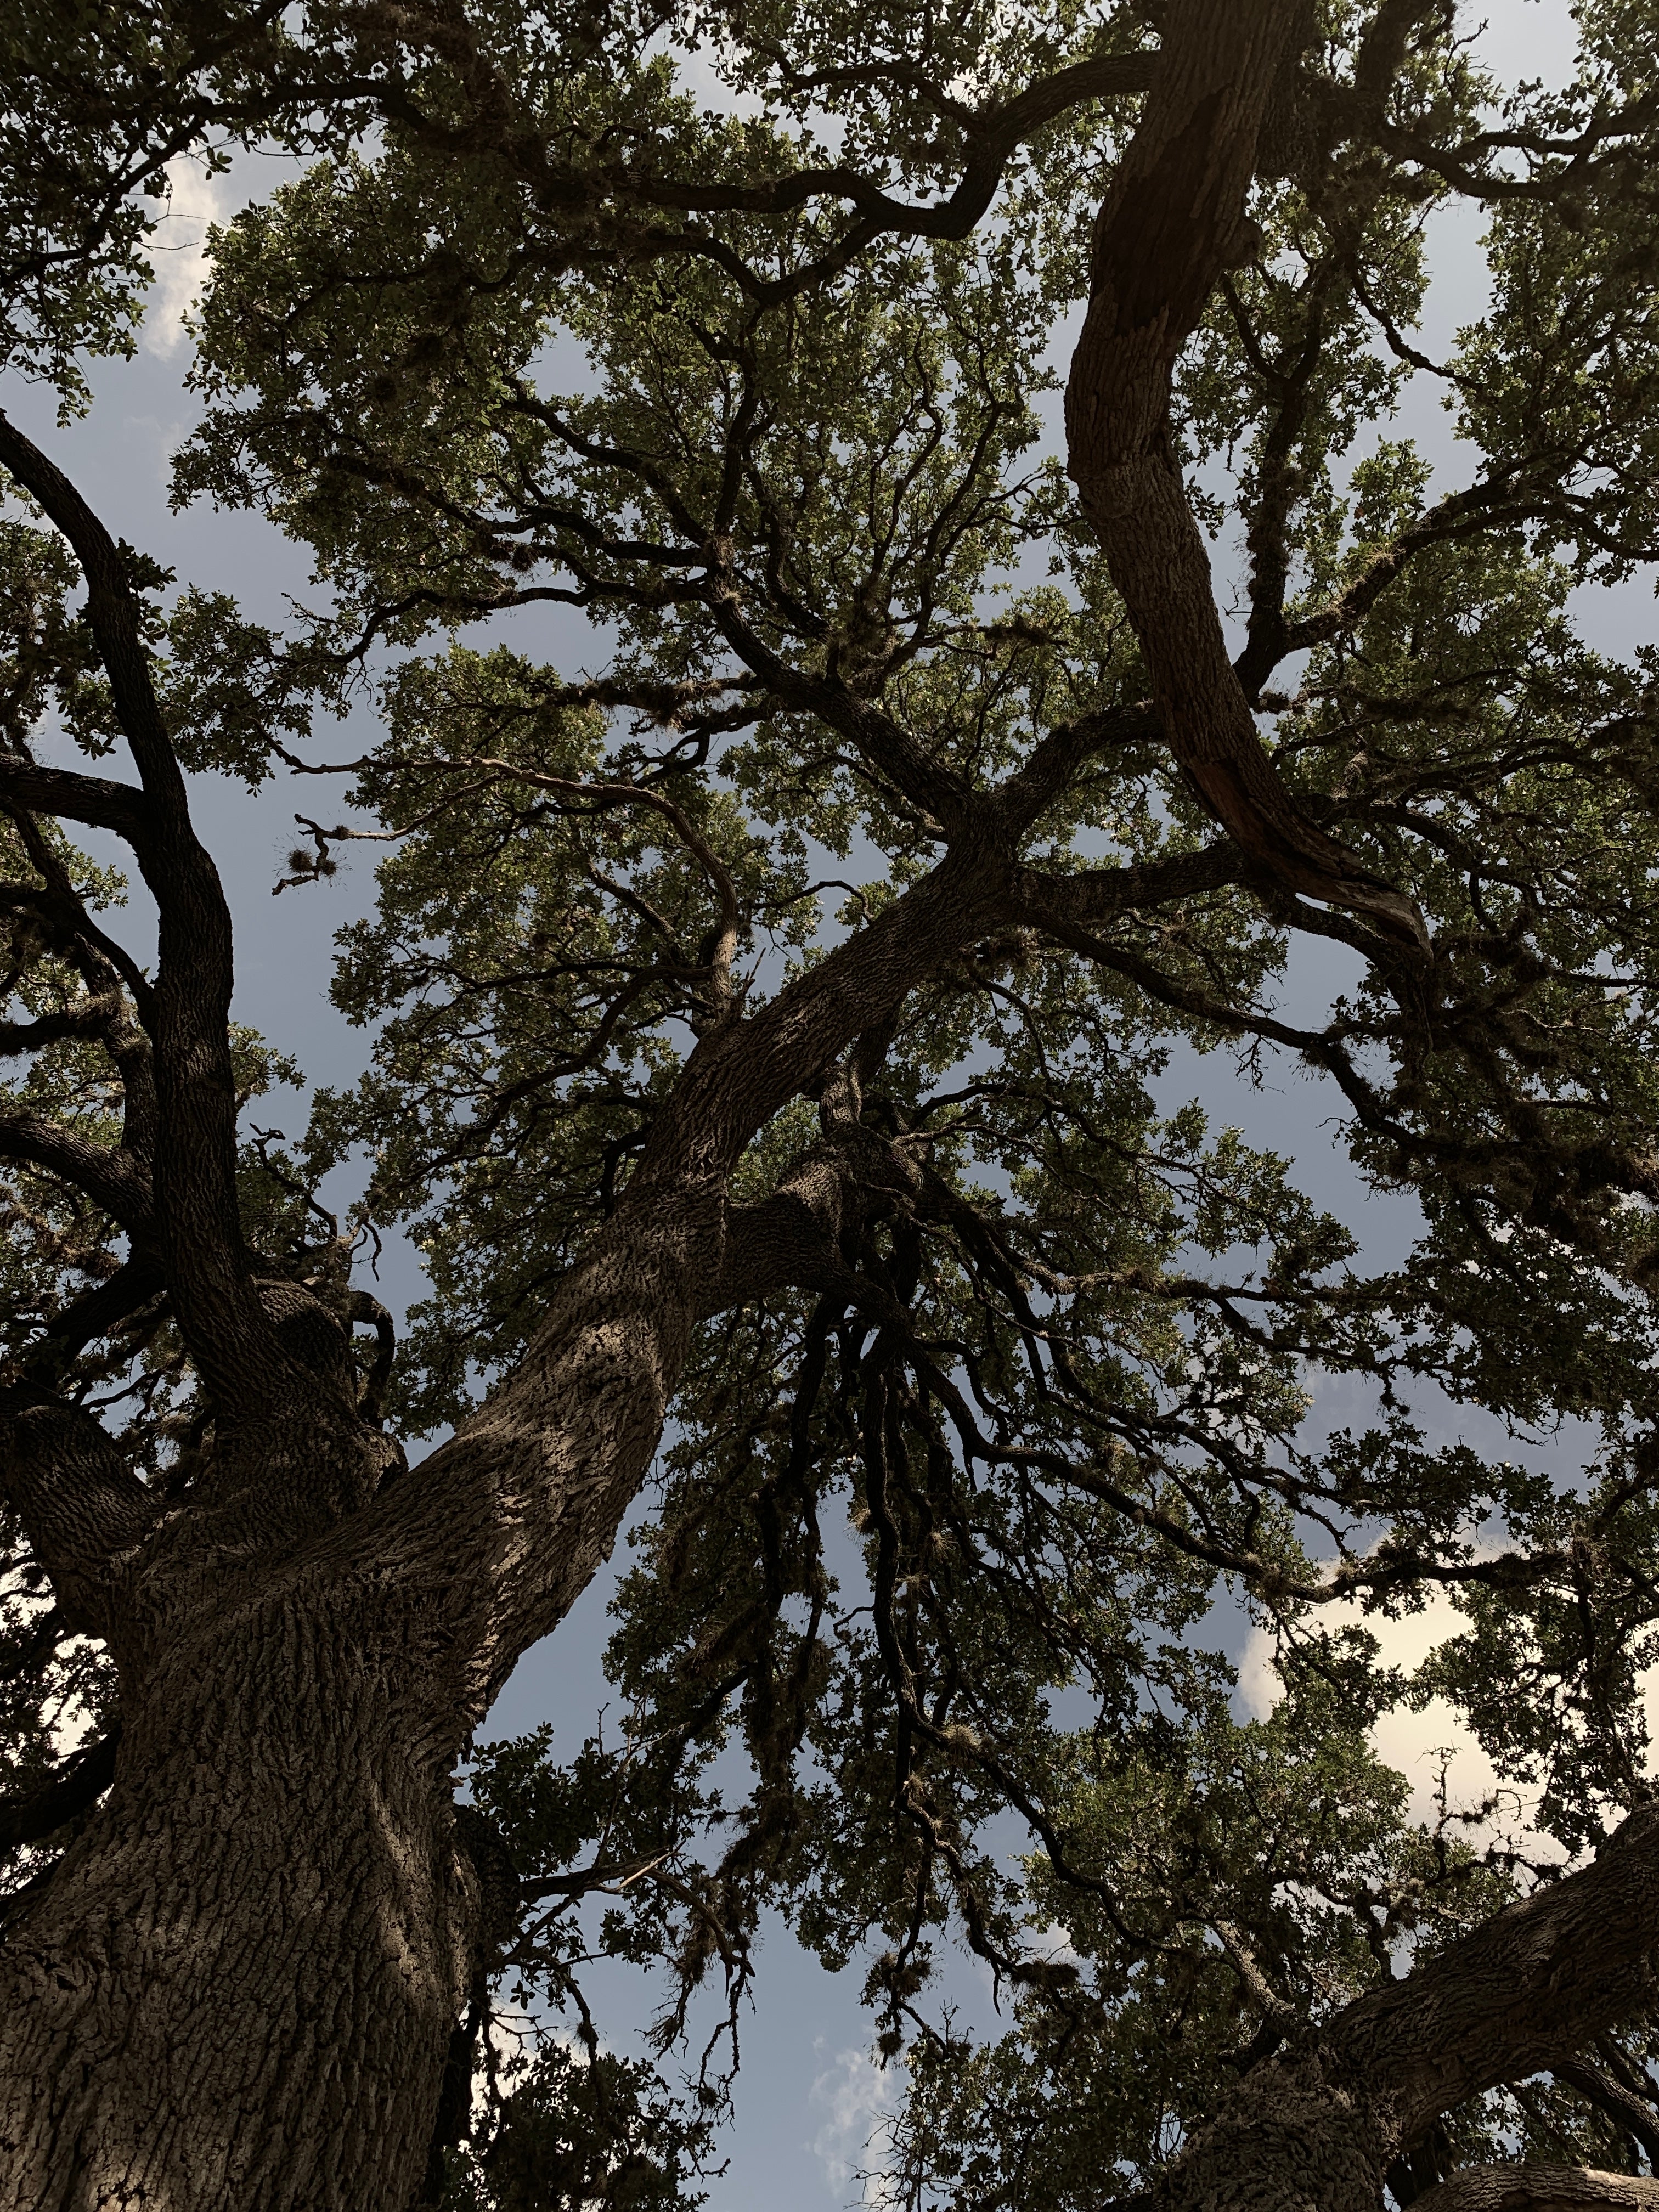 Tree coverage